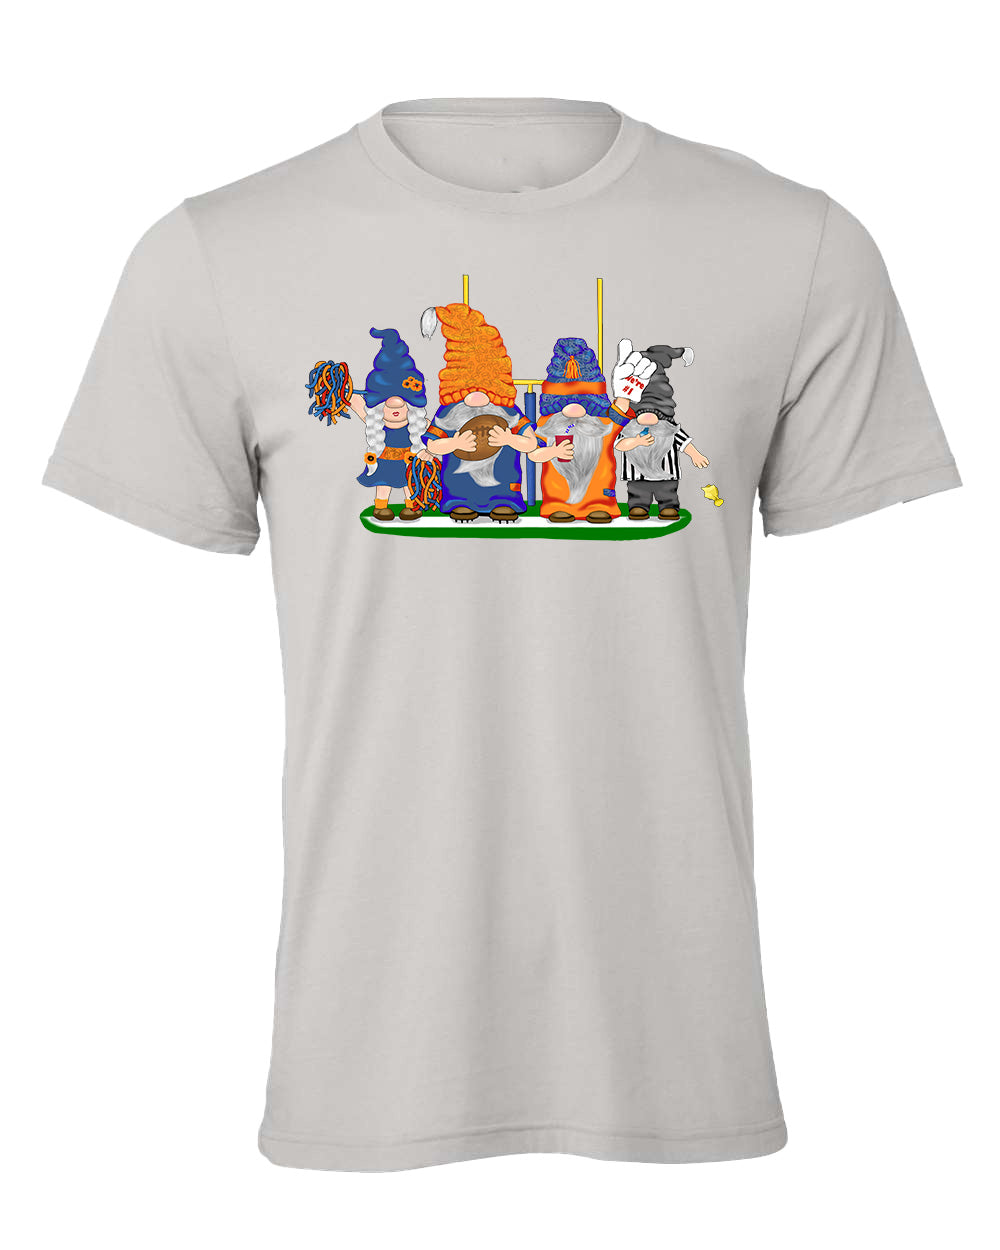 Orange & Navy Football Gnomes on Men's T-shirt (similar to Denver)